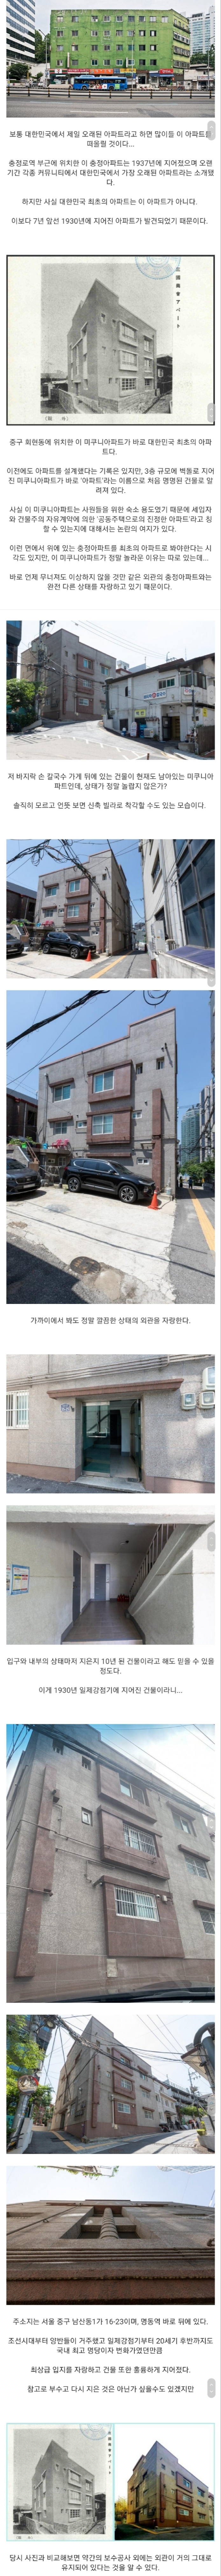 대한민국에서 가장 오래된 아파트.jpg